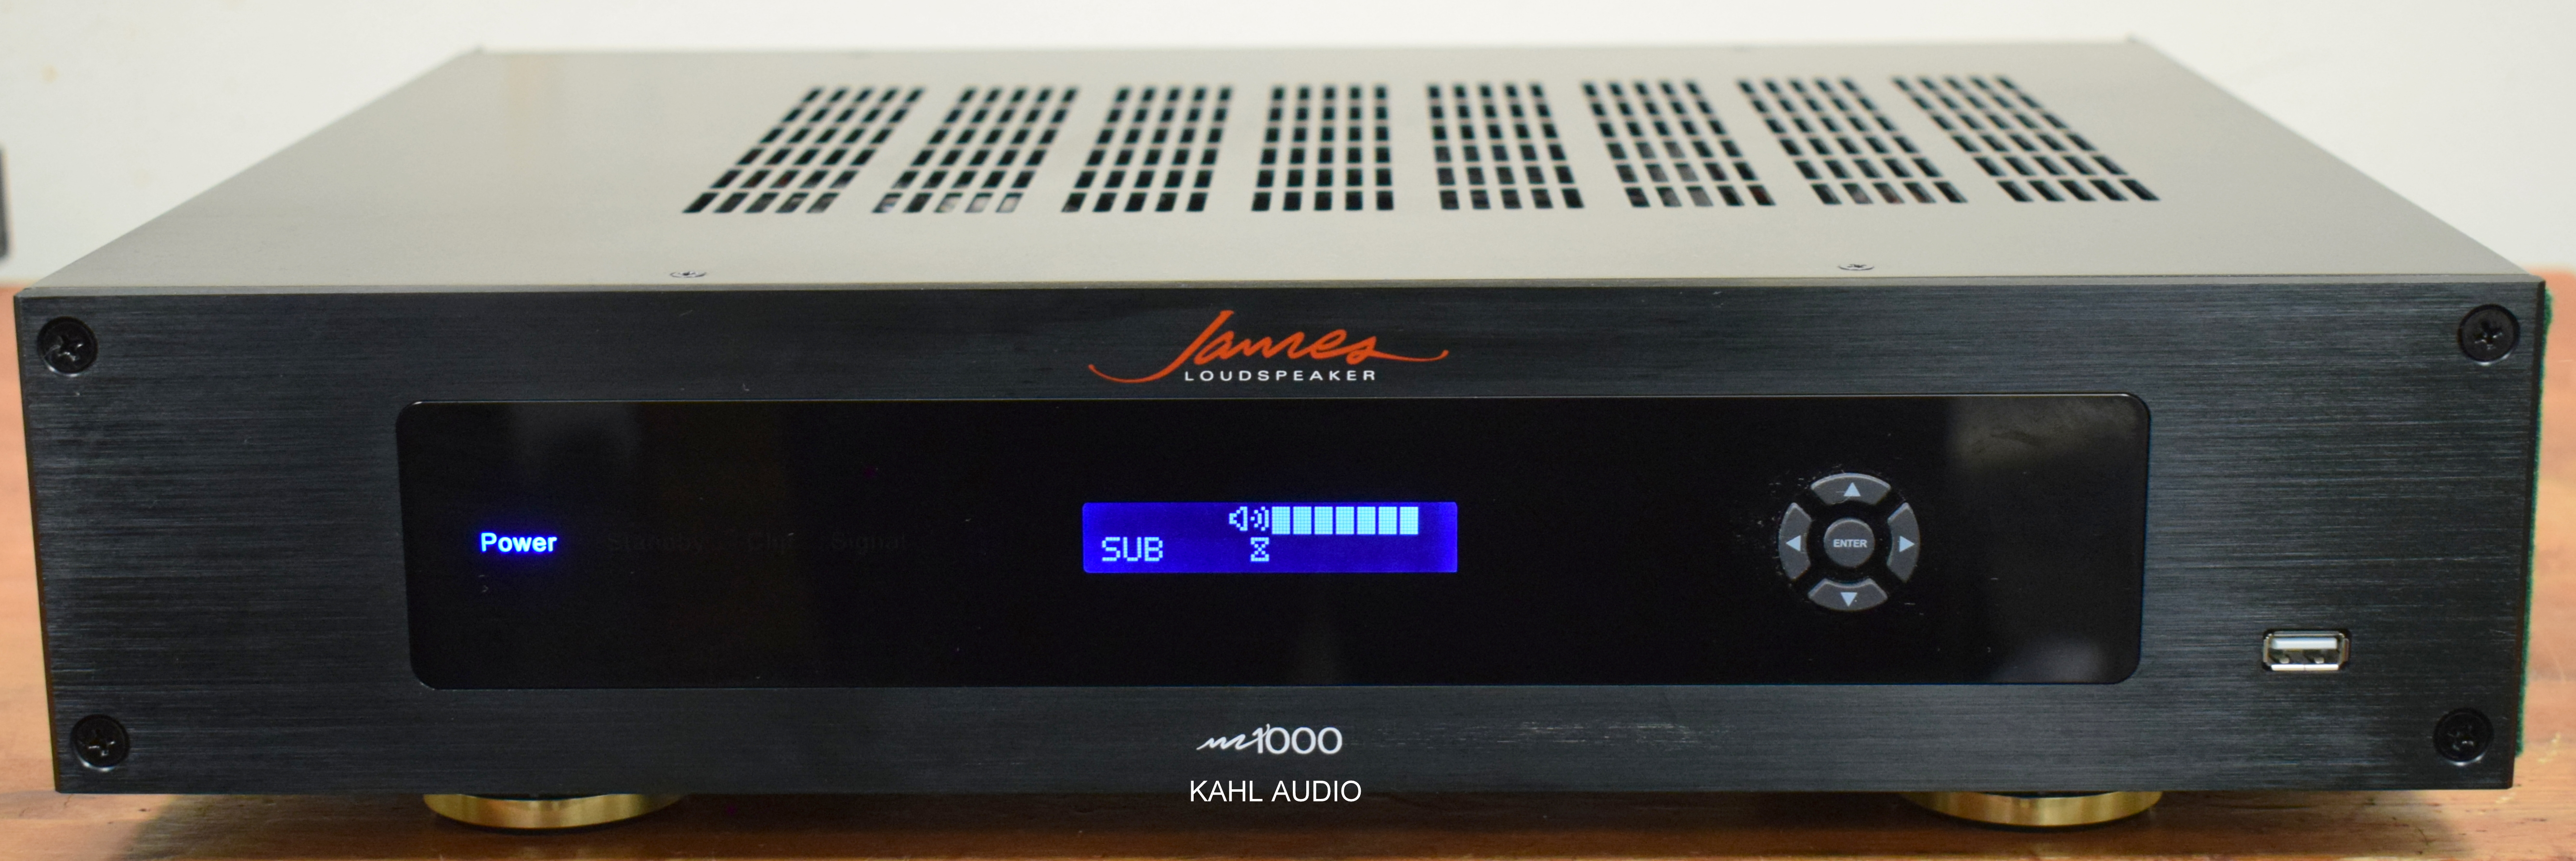 James Loudspeakers M1000 DSP subwoofer amplifier. 1000W! 115V/230V. $1,000 MSRP – Kahl Audio